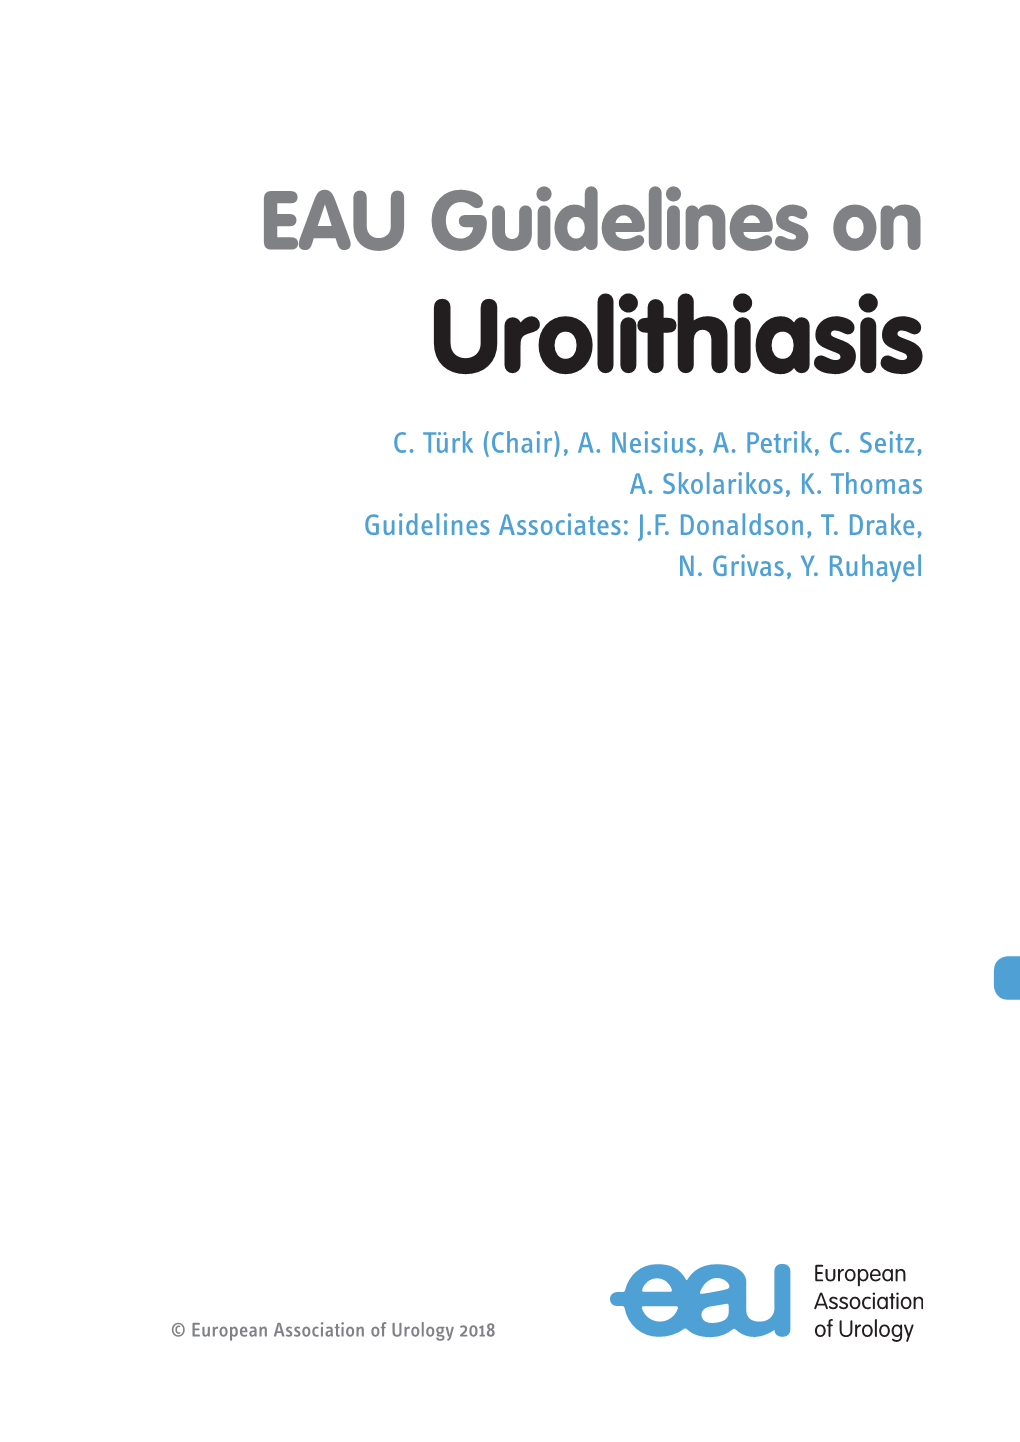 EAU-Guidelines-On-Urolithiasis-2018